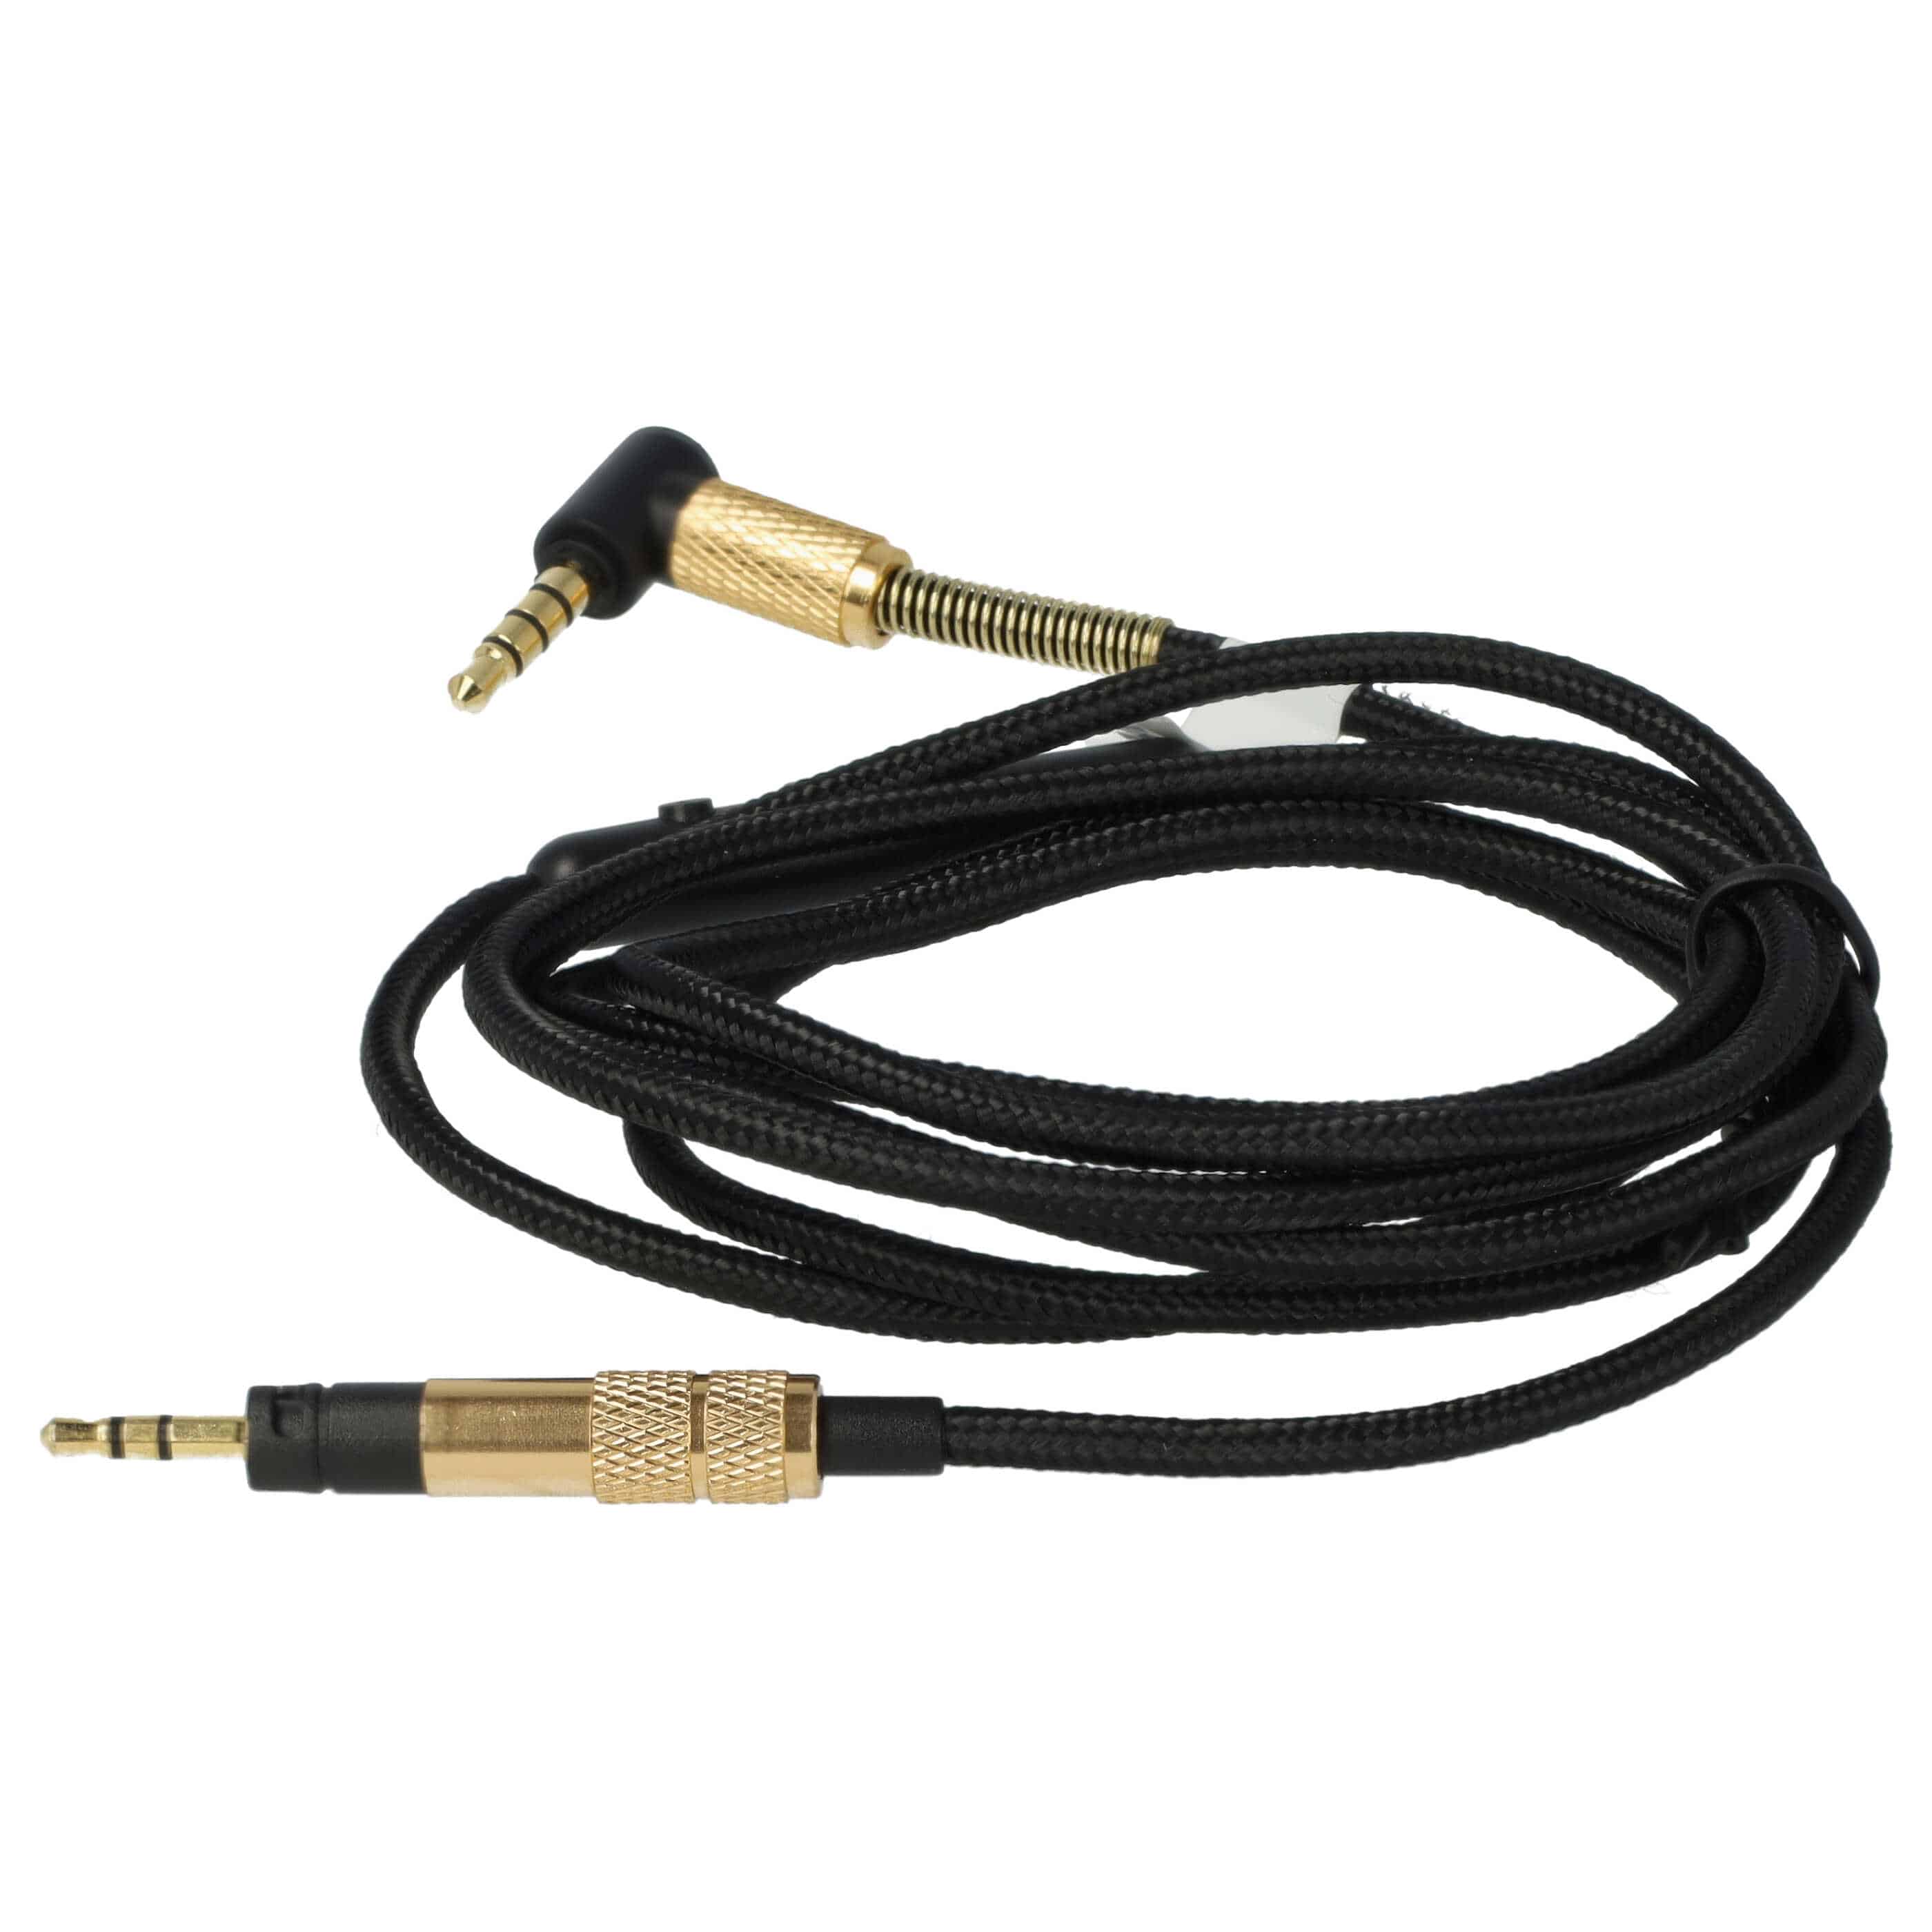 Kopfhörer Kabel passend für Sennheiser Momentum 2.0 HD4.30G , 140 cm, schwarz